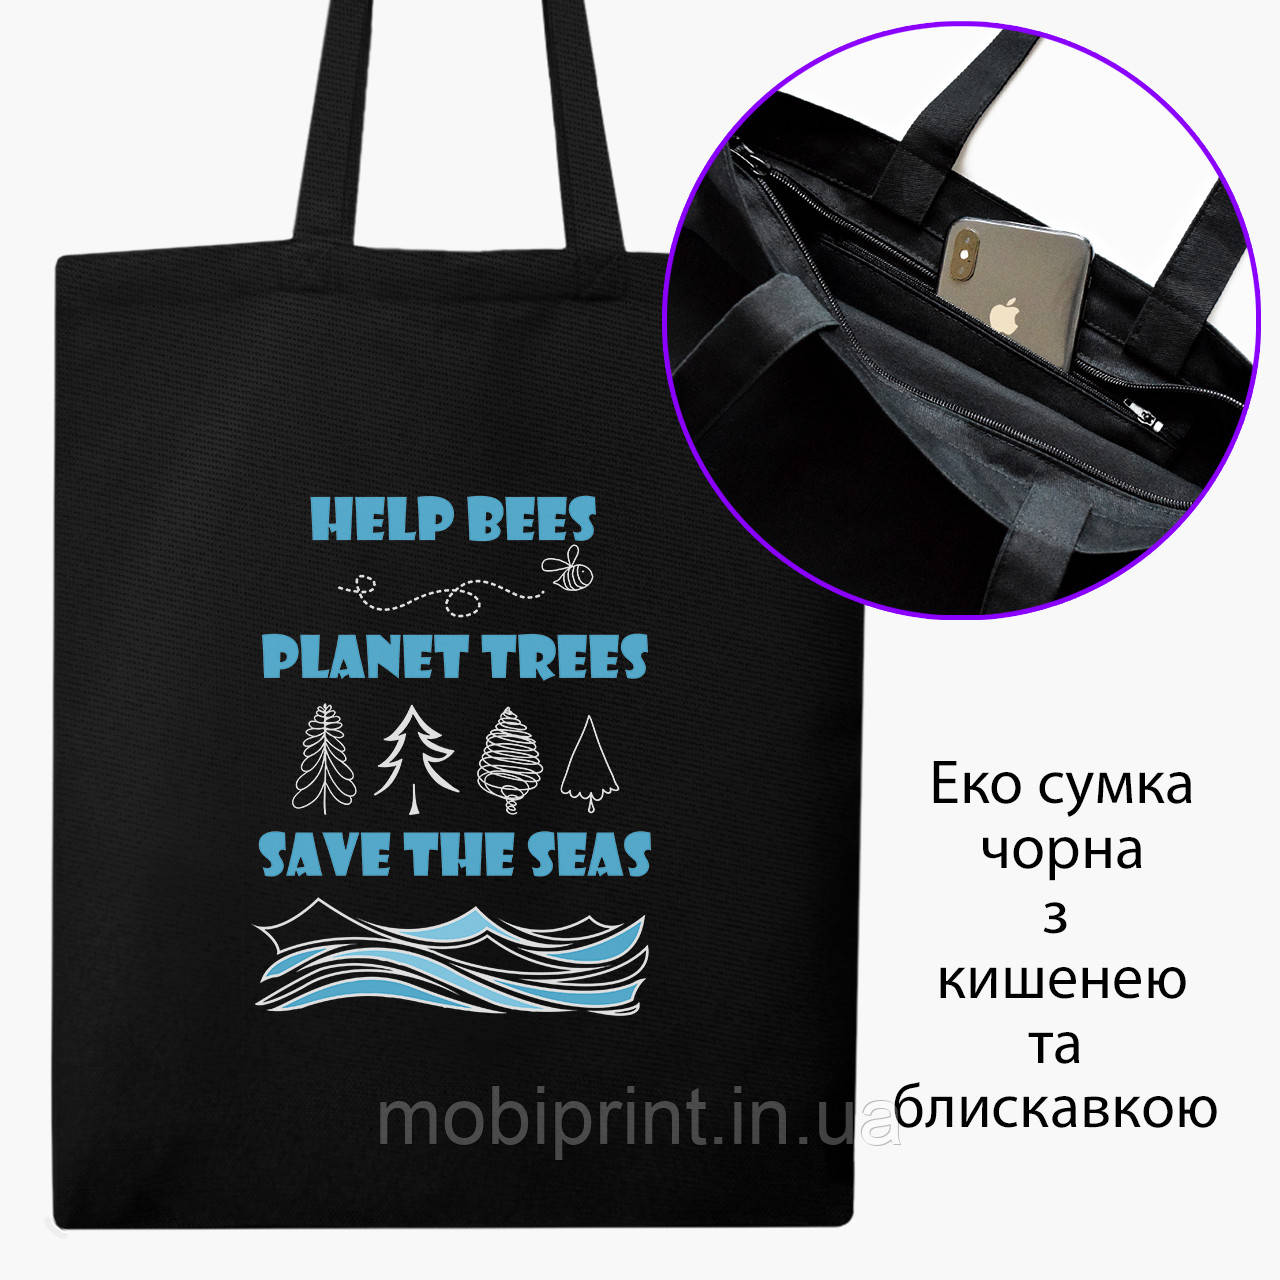 Еко сумка Екологія (Ecology) (9227-1334-BKZ) чорна на блискавці саржа, фото 1